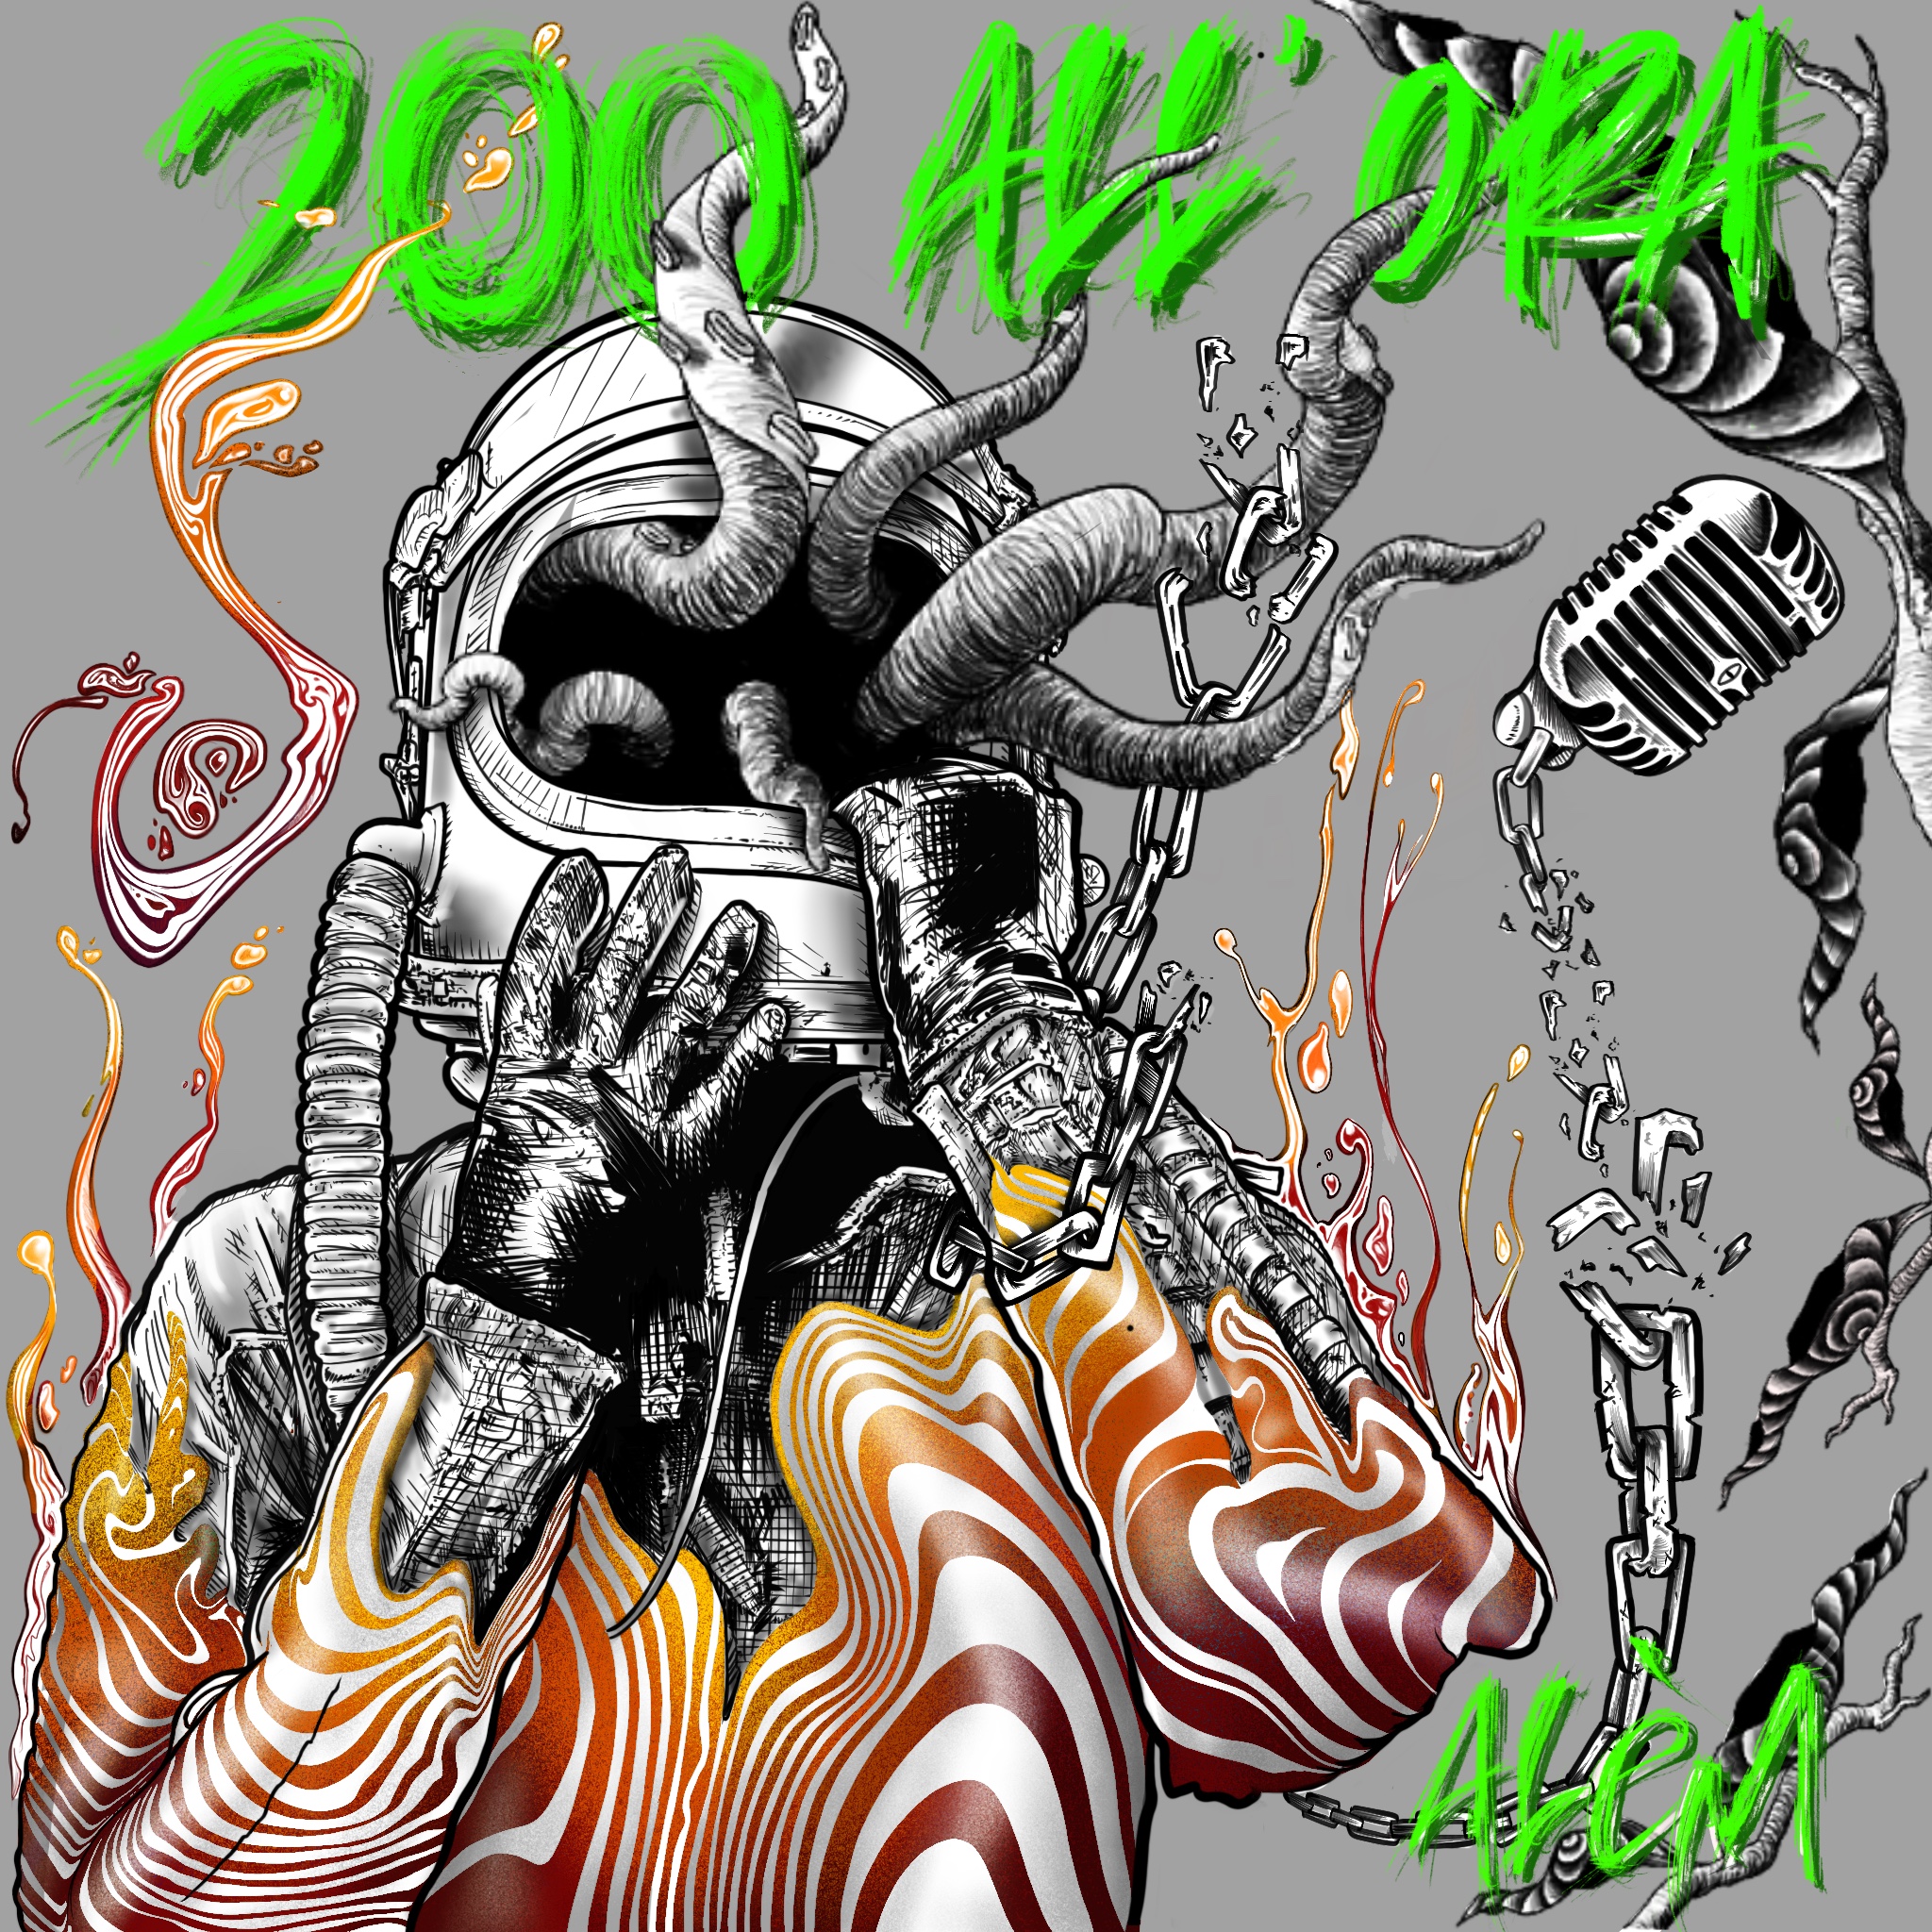 ALÈM “200 all’ora” è il singolo del giovane artista che si pone come il manifesto futurista della generazione z attraverso sonorità punk, rap e trance music